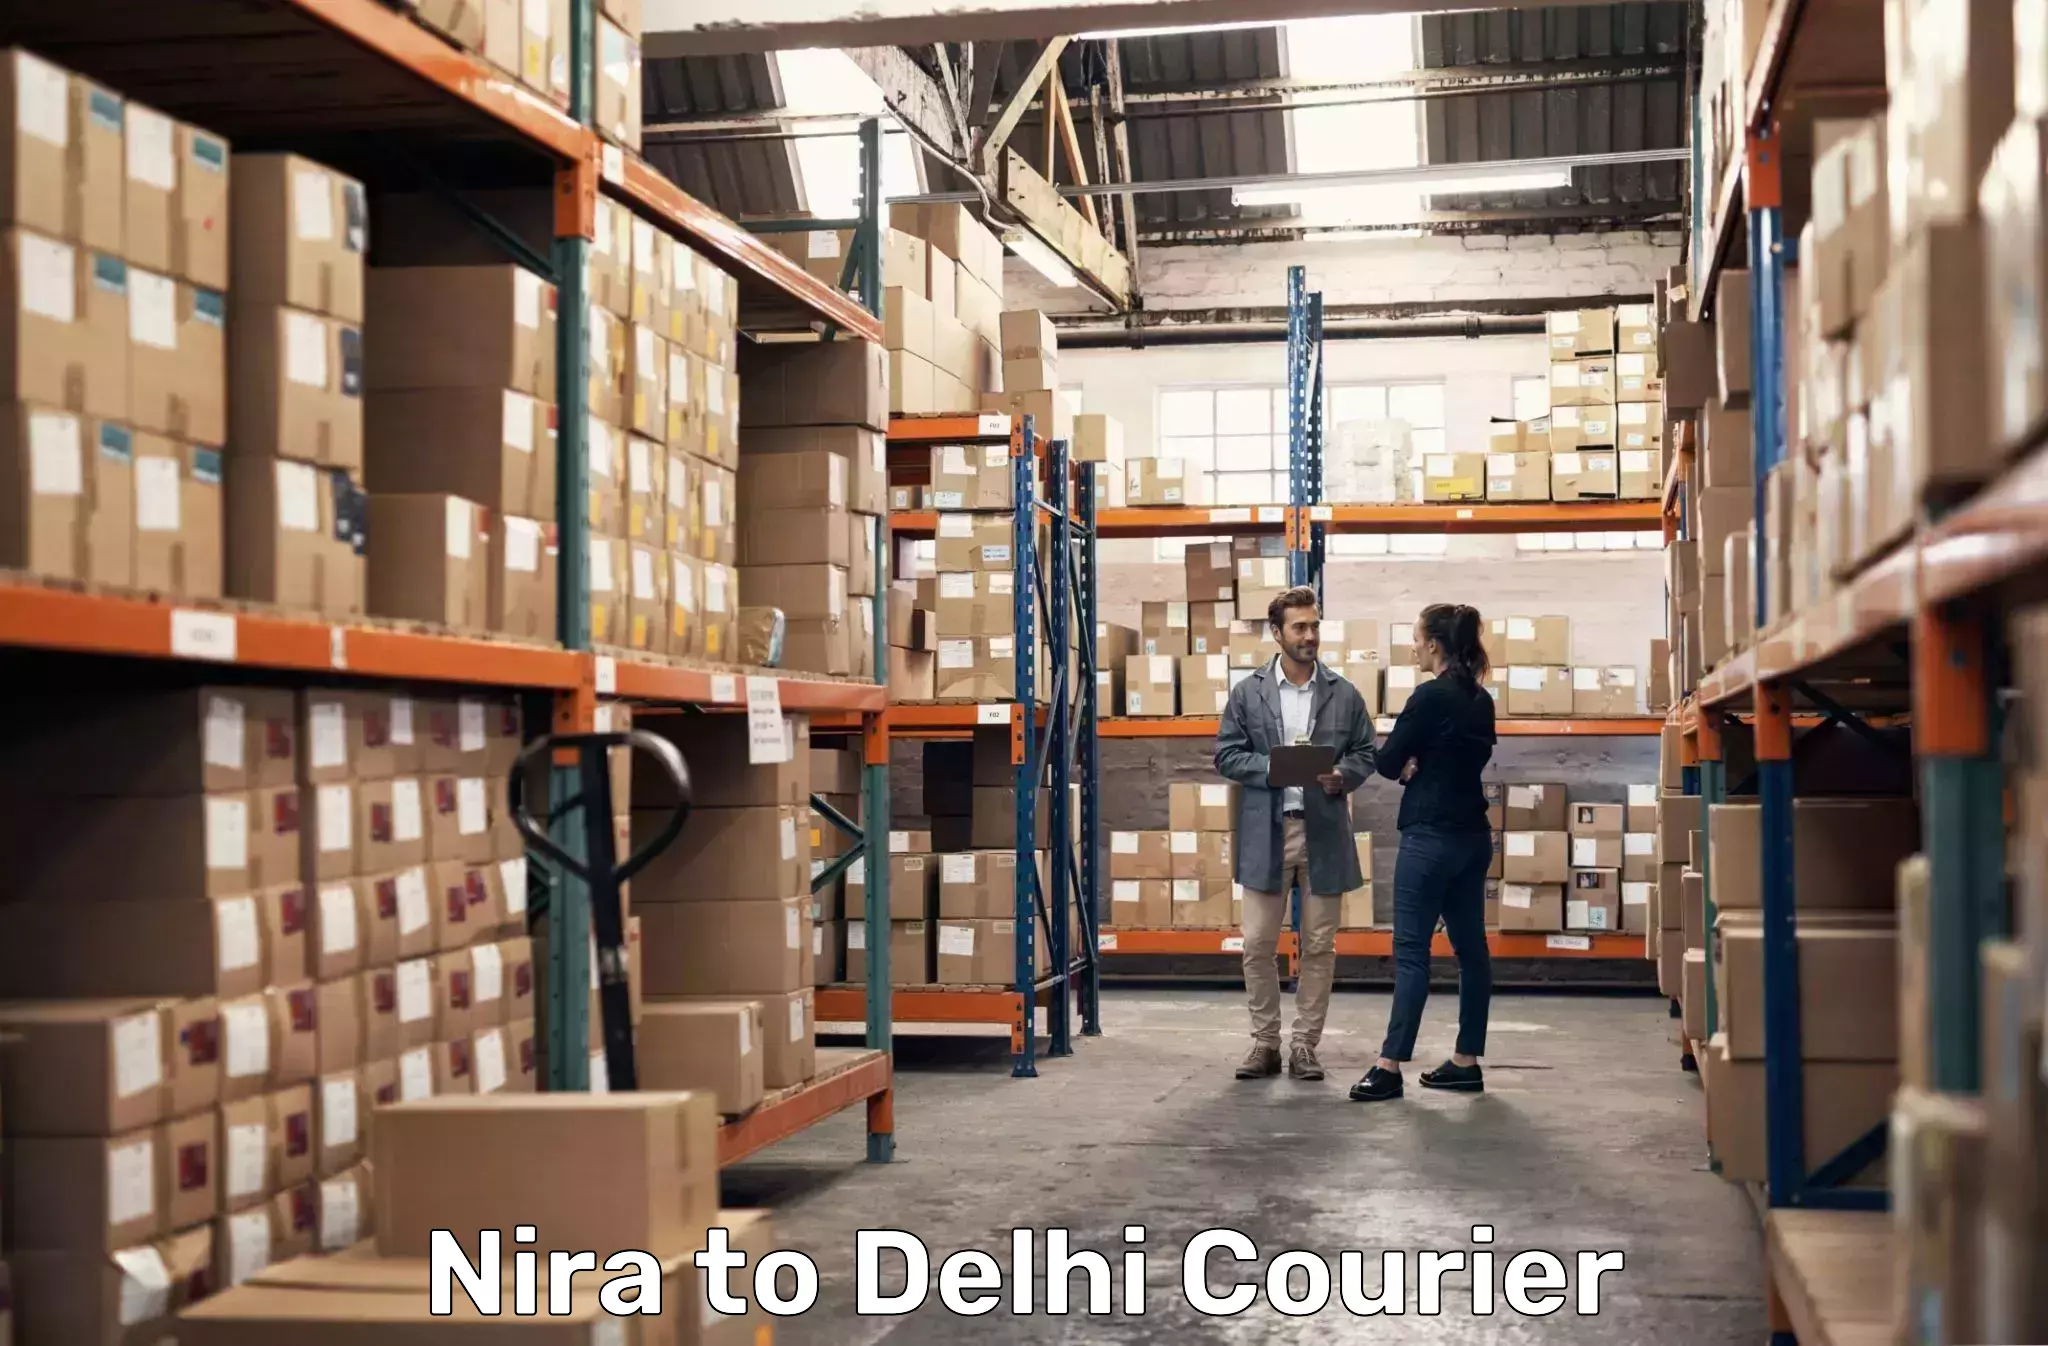 Business delivery service Nira to Delhi